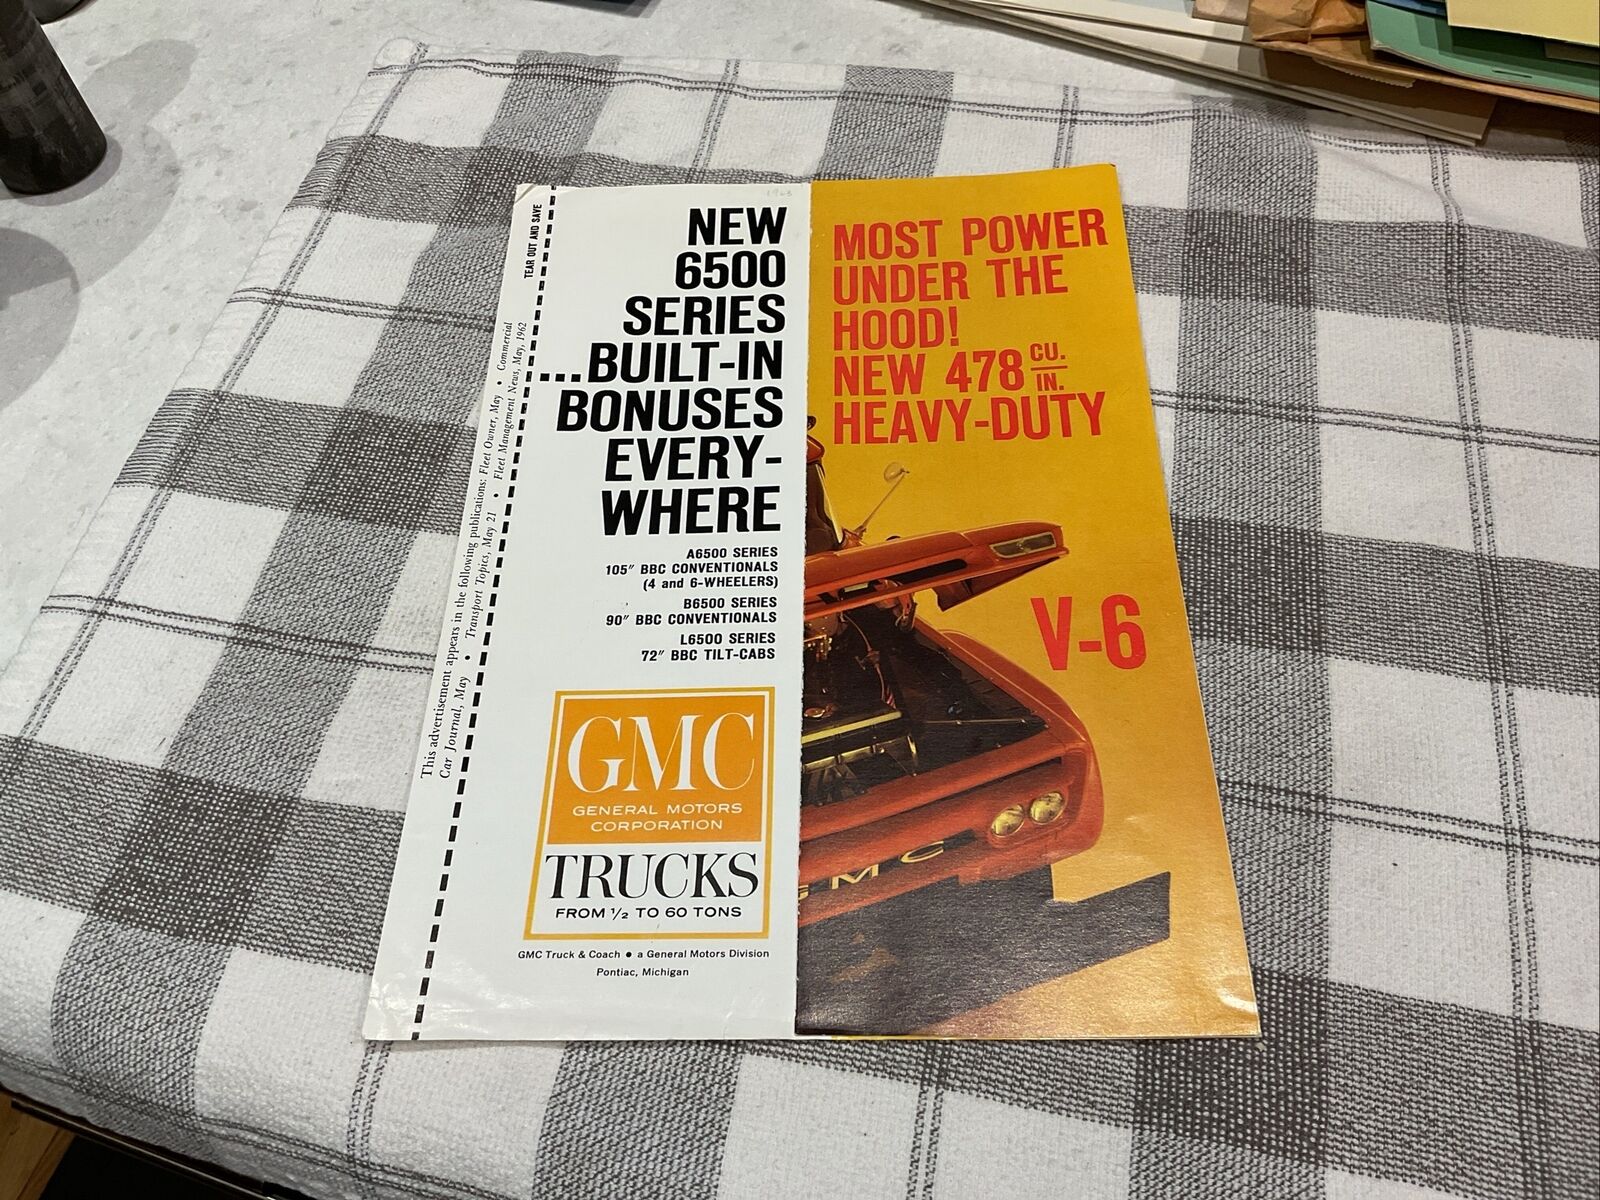 1962 GMC Trucks V-6 Magazine Advertising Insert